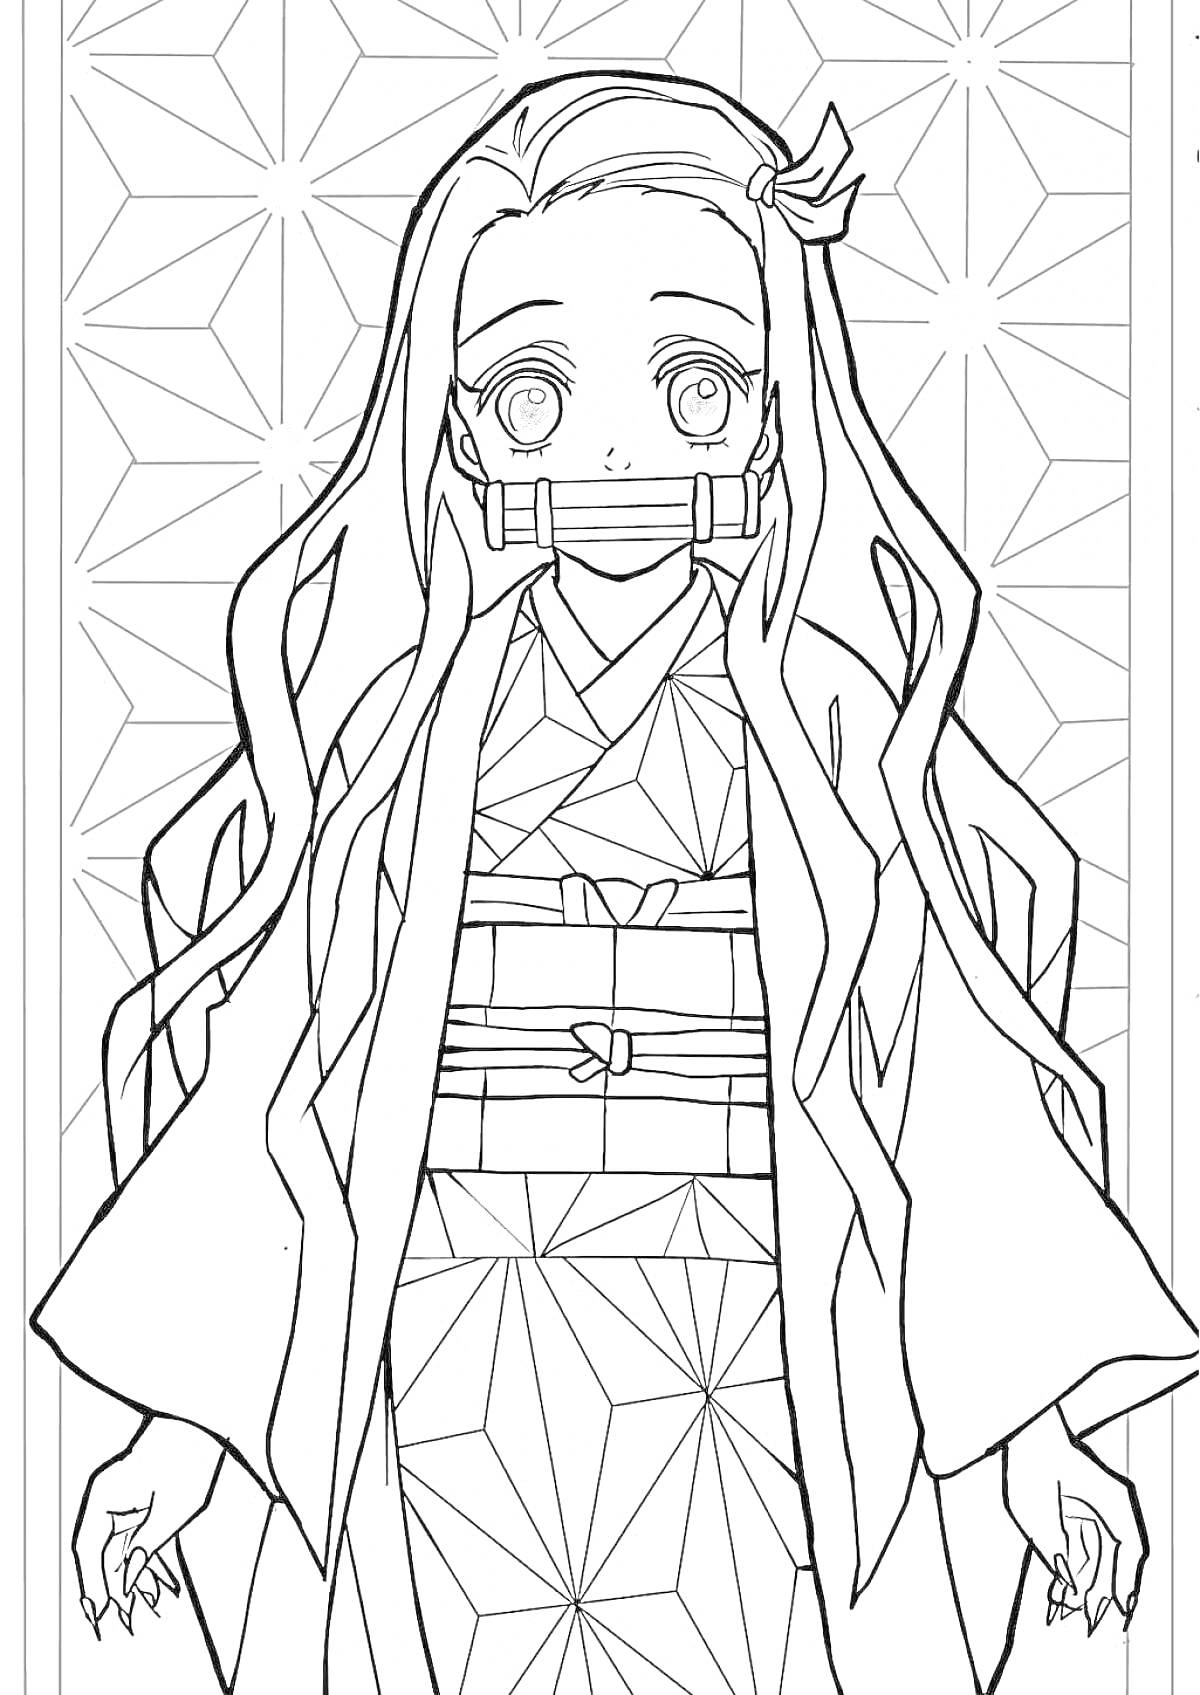 Раскраска Девочка в кимоно с длинными волосами и полоской на лице